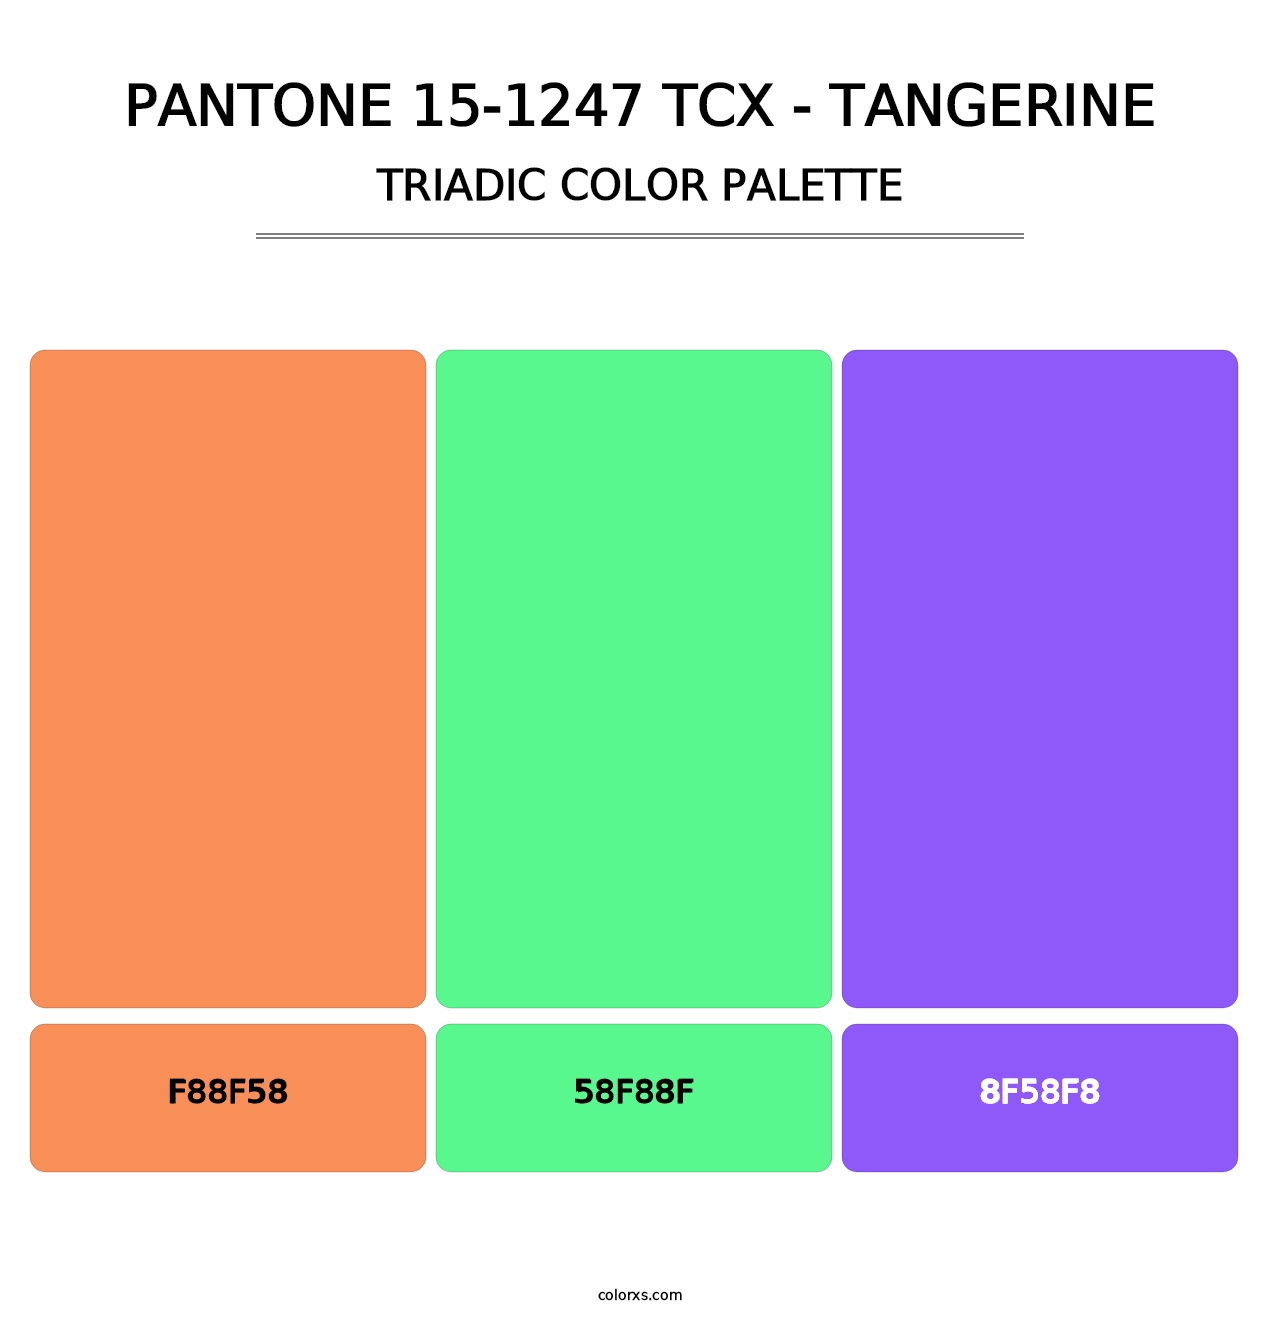 PANTONE 15-1247 TCX - Tangerine - Triadic Color Palette